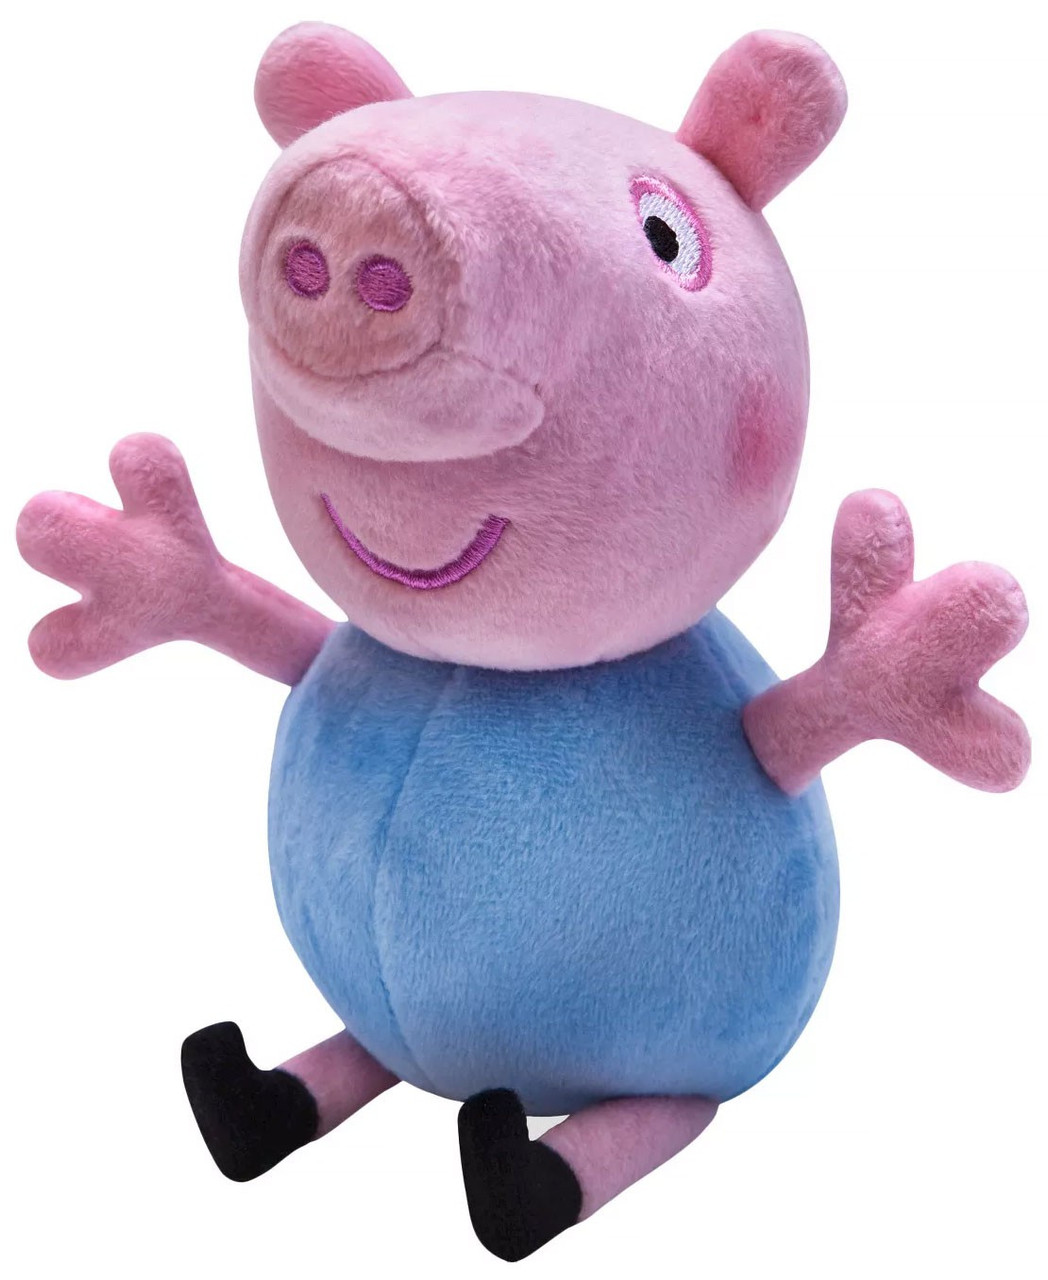 george pig stuffed animal